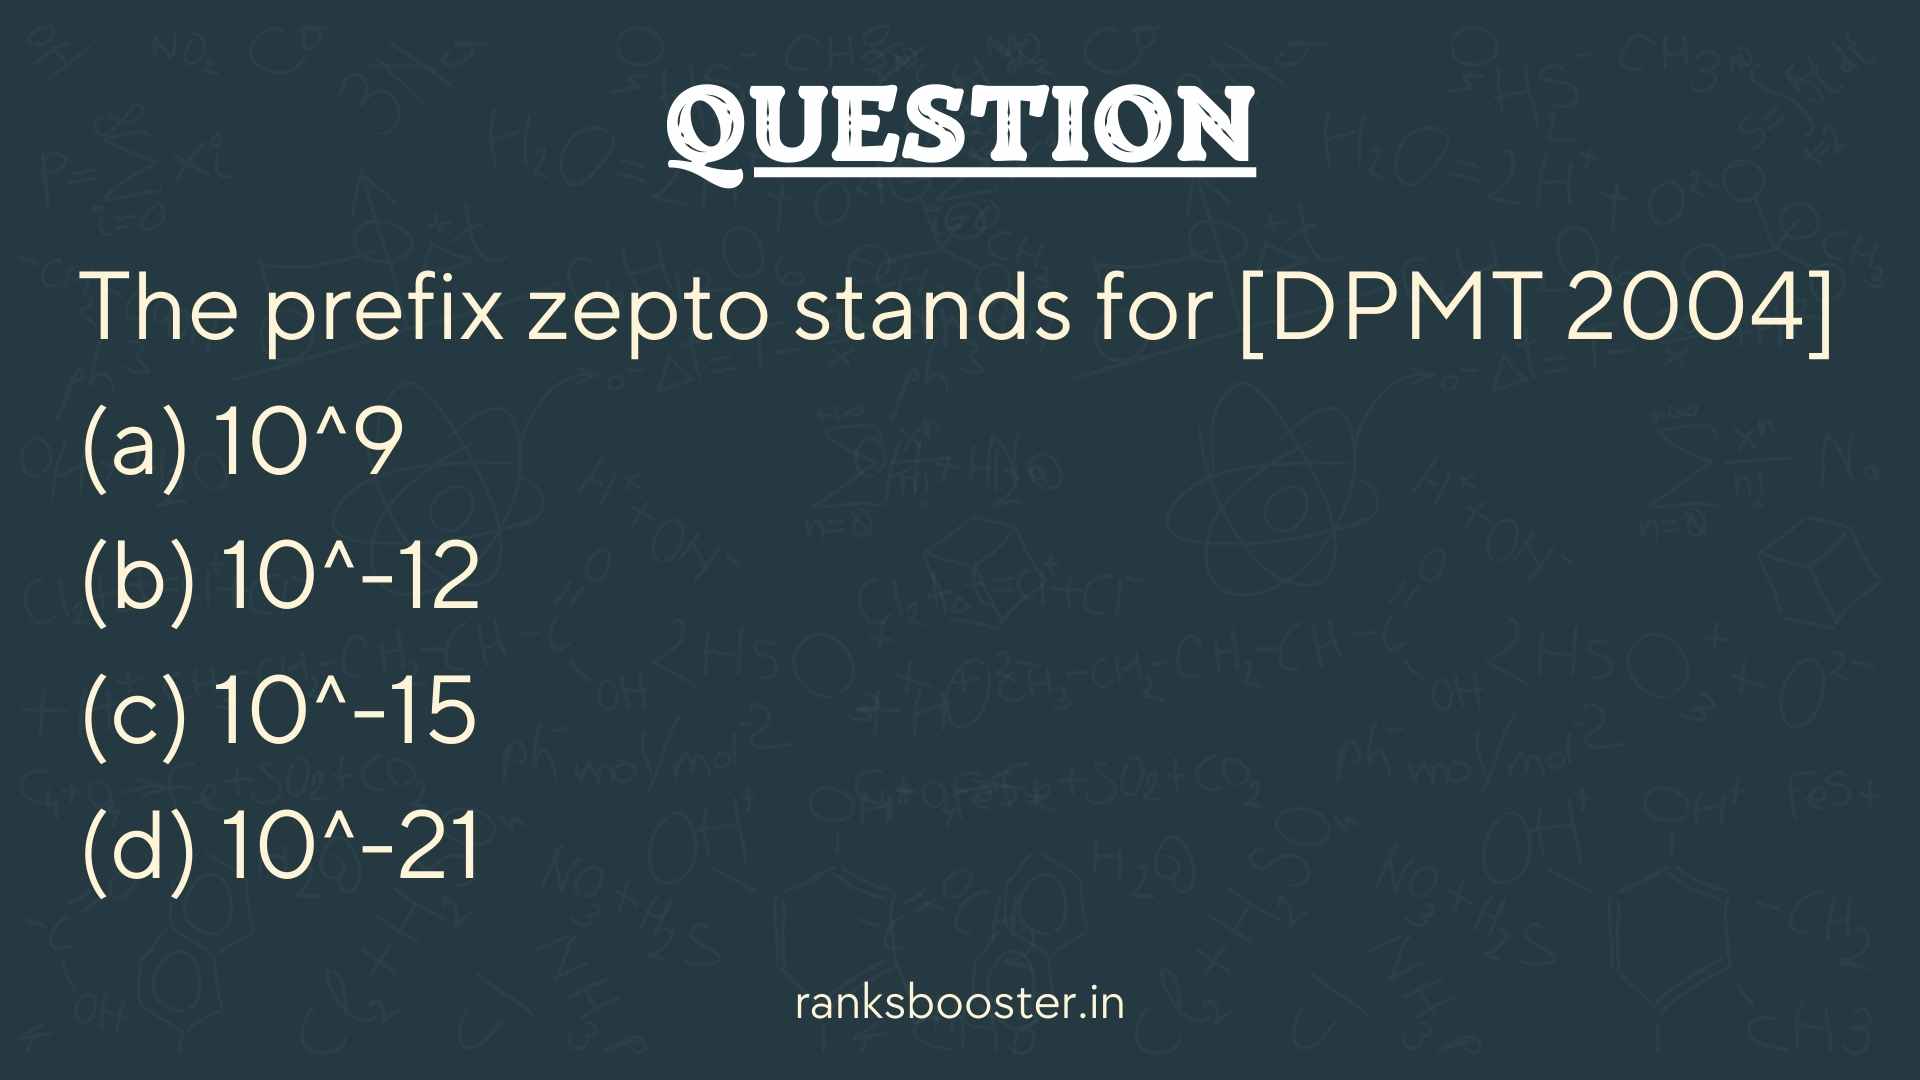 Question: The prefix zepto stands for [DPMT 2004] (a) 10^9 (b) 10^-12 (c) 10^-15 (d) 10^-21